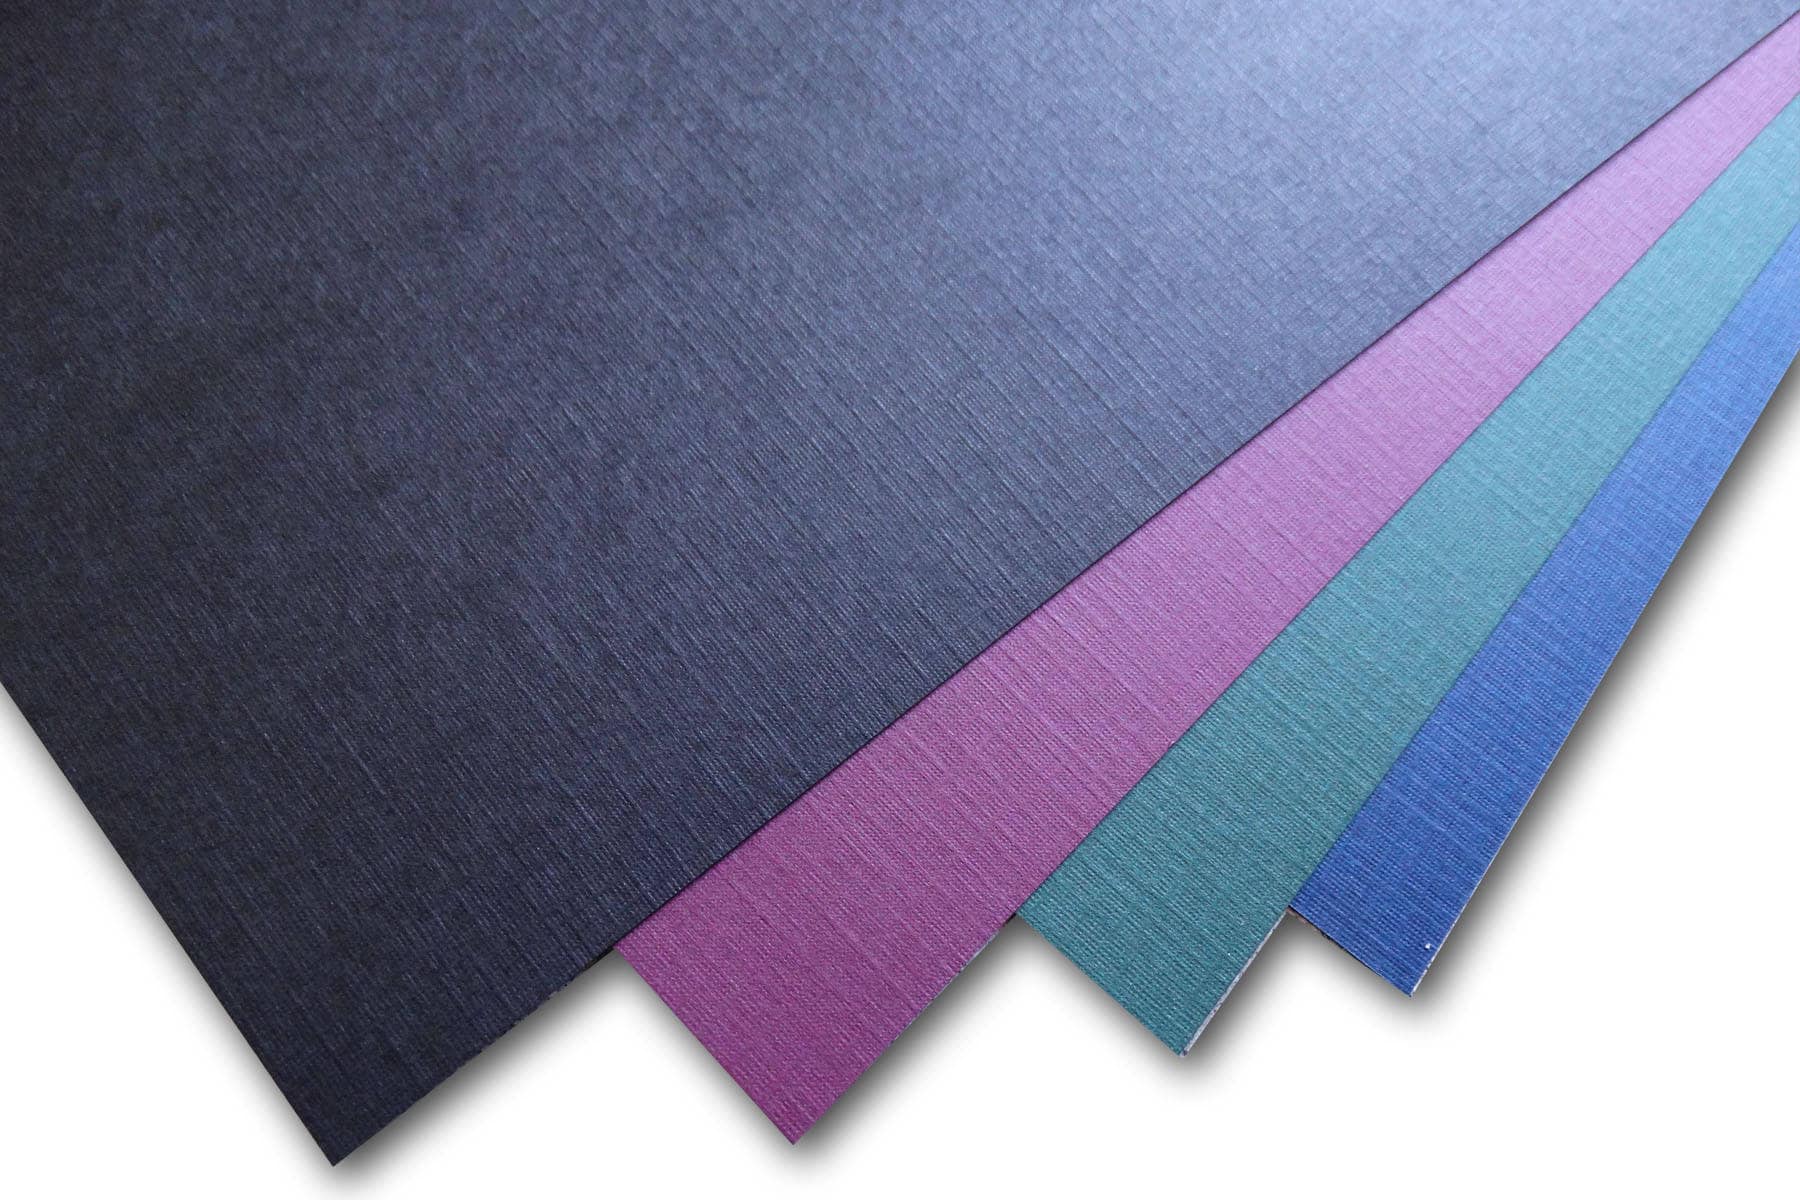 Sizzix Surfacez - Neutral Colored Felt Sheets 10PK